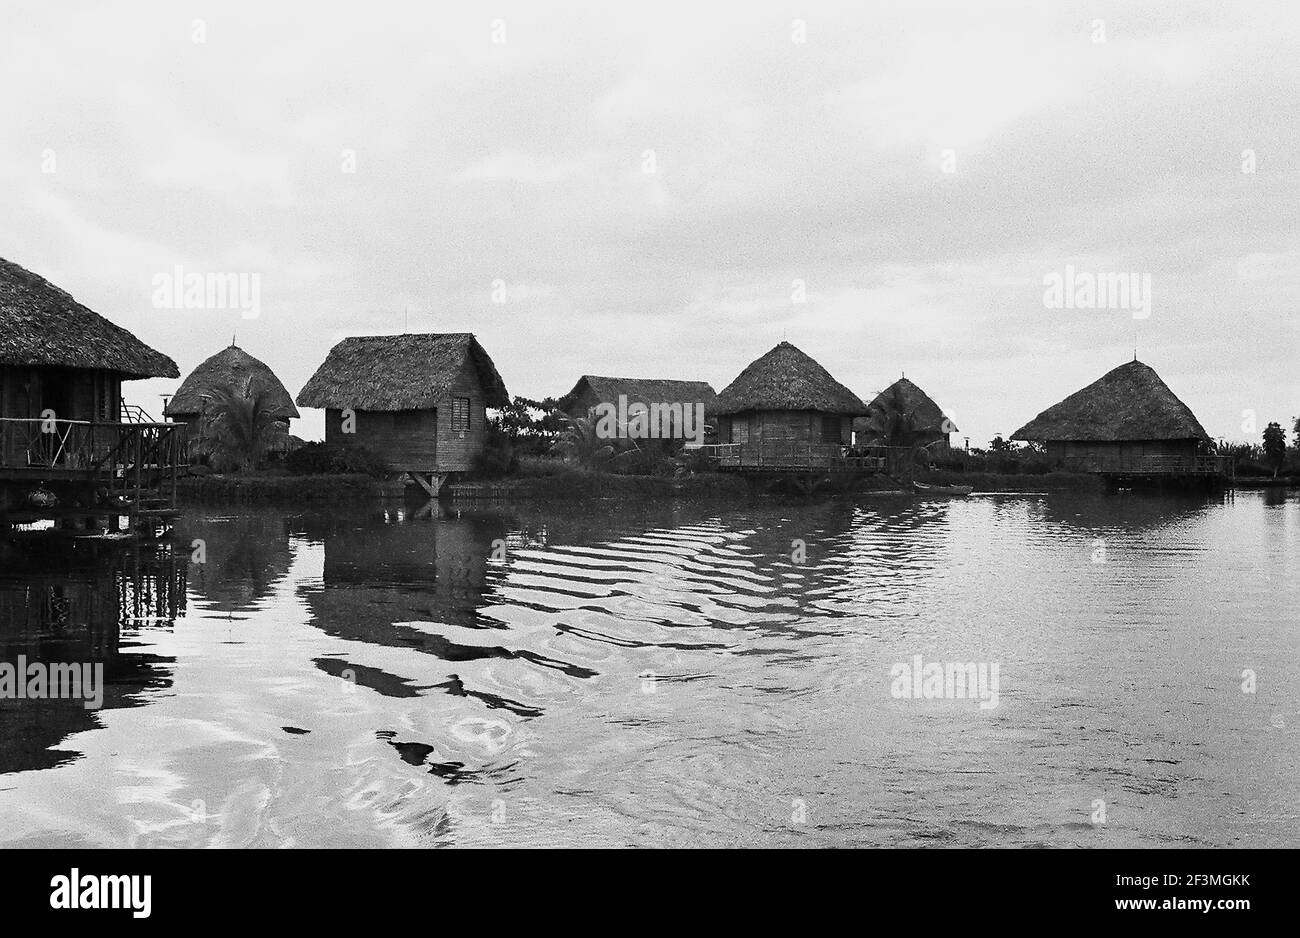 Villaggio indiano di Playa Giron (Baia dei porci), Cuba, Matanzas (Cuba: Provincia), Playa Giron (Cuba), 1963. Dalla collezione di fotografie Deena Stryker. () Foto Stock